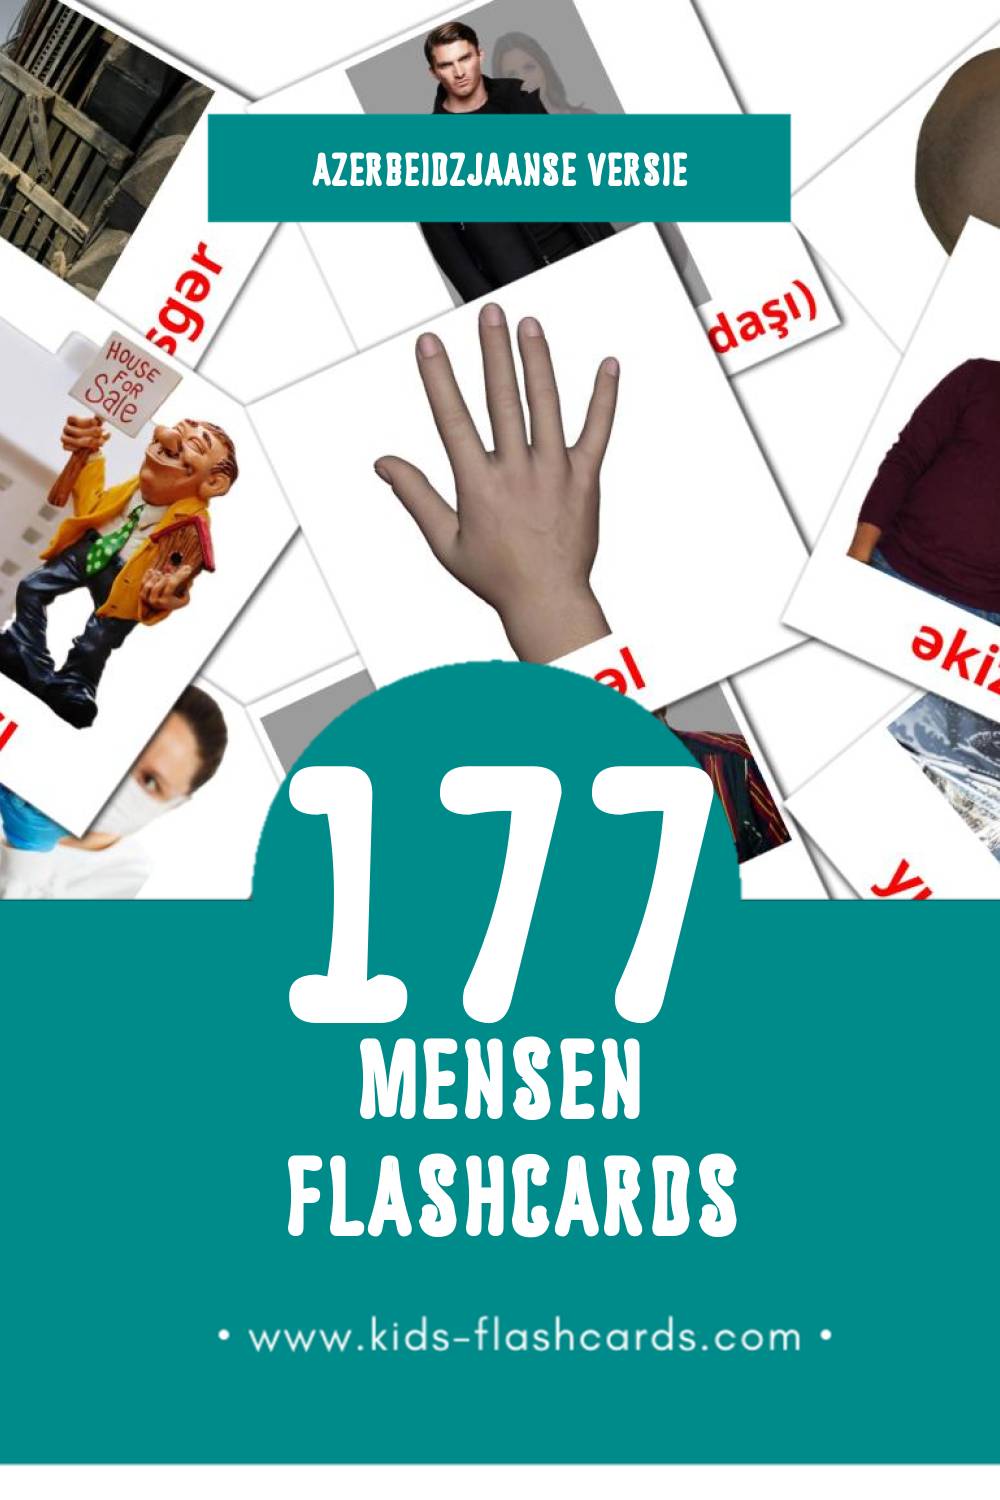 Visuele Insanlar Flashcards voor Kleuters (177 kaarten in het Azerbeidzjaans)